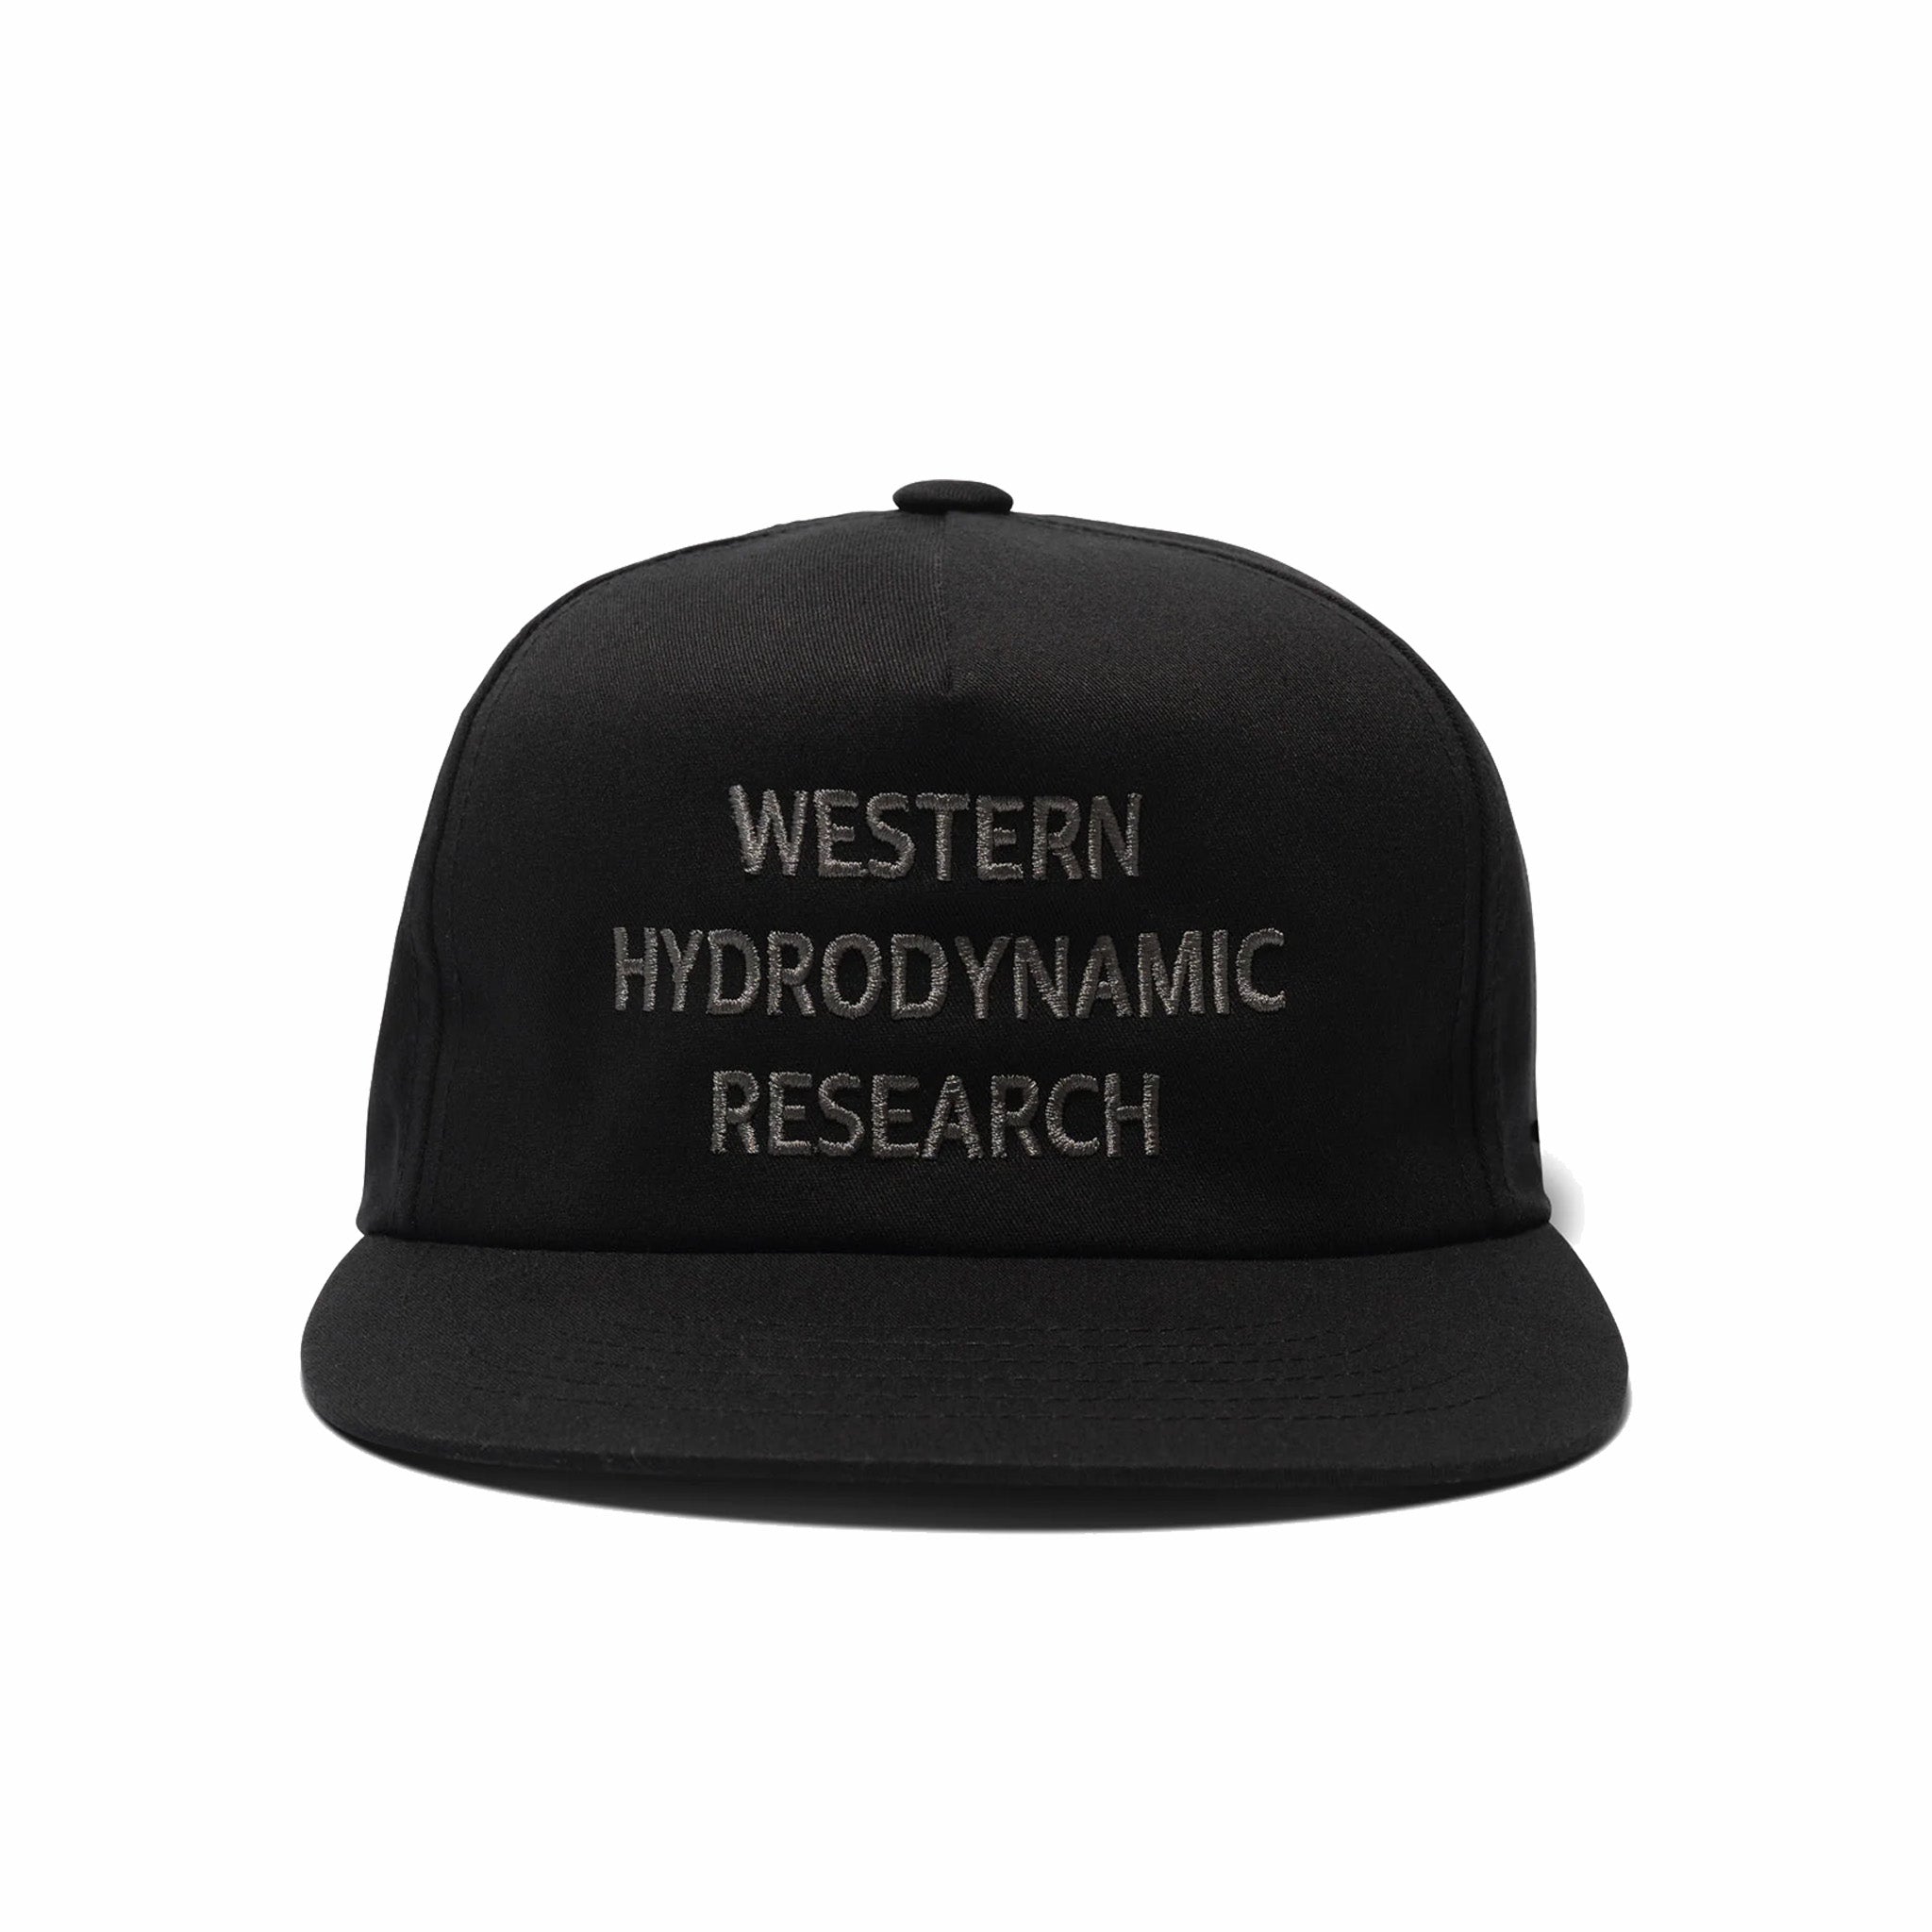 Ricerca idrodinamica occidentale, Cappello promozionale Western Hydrodynamic Research (nero/grigio)